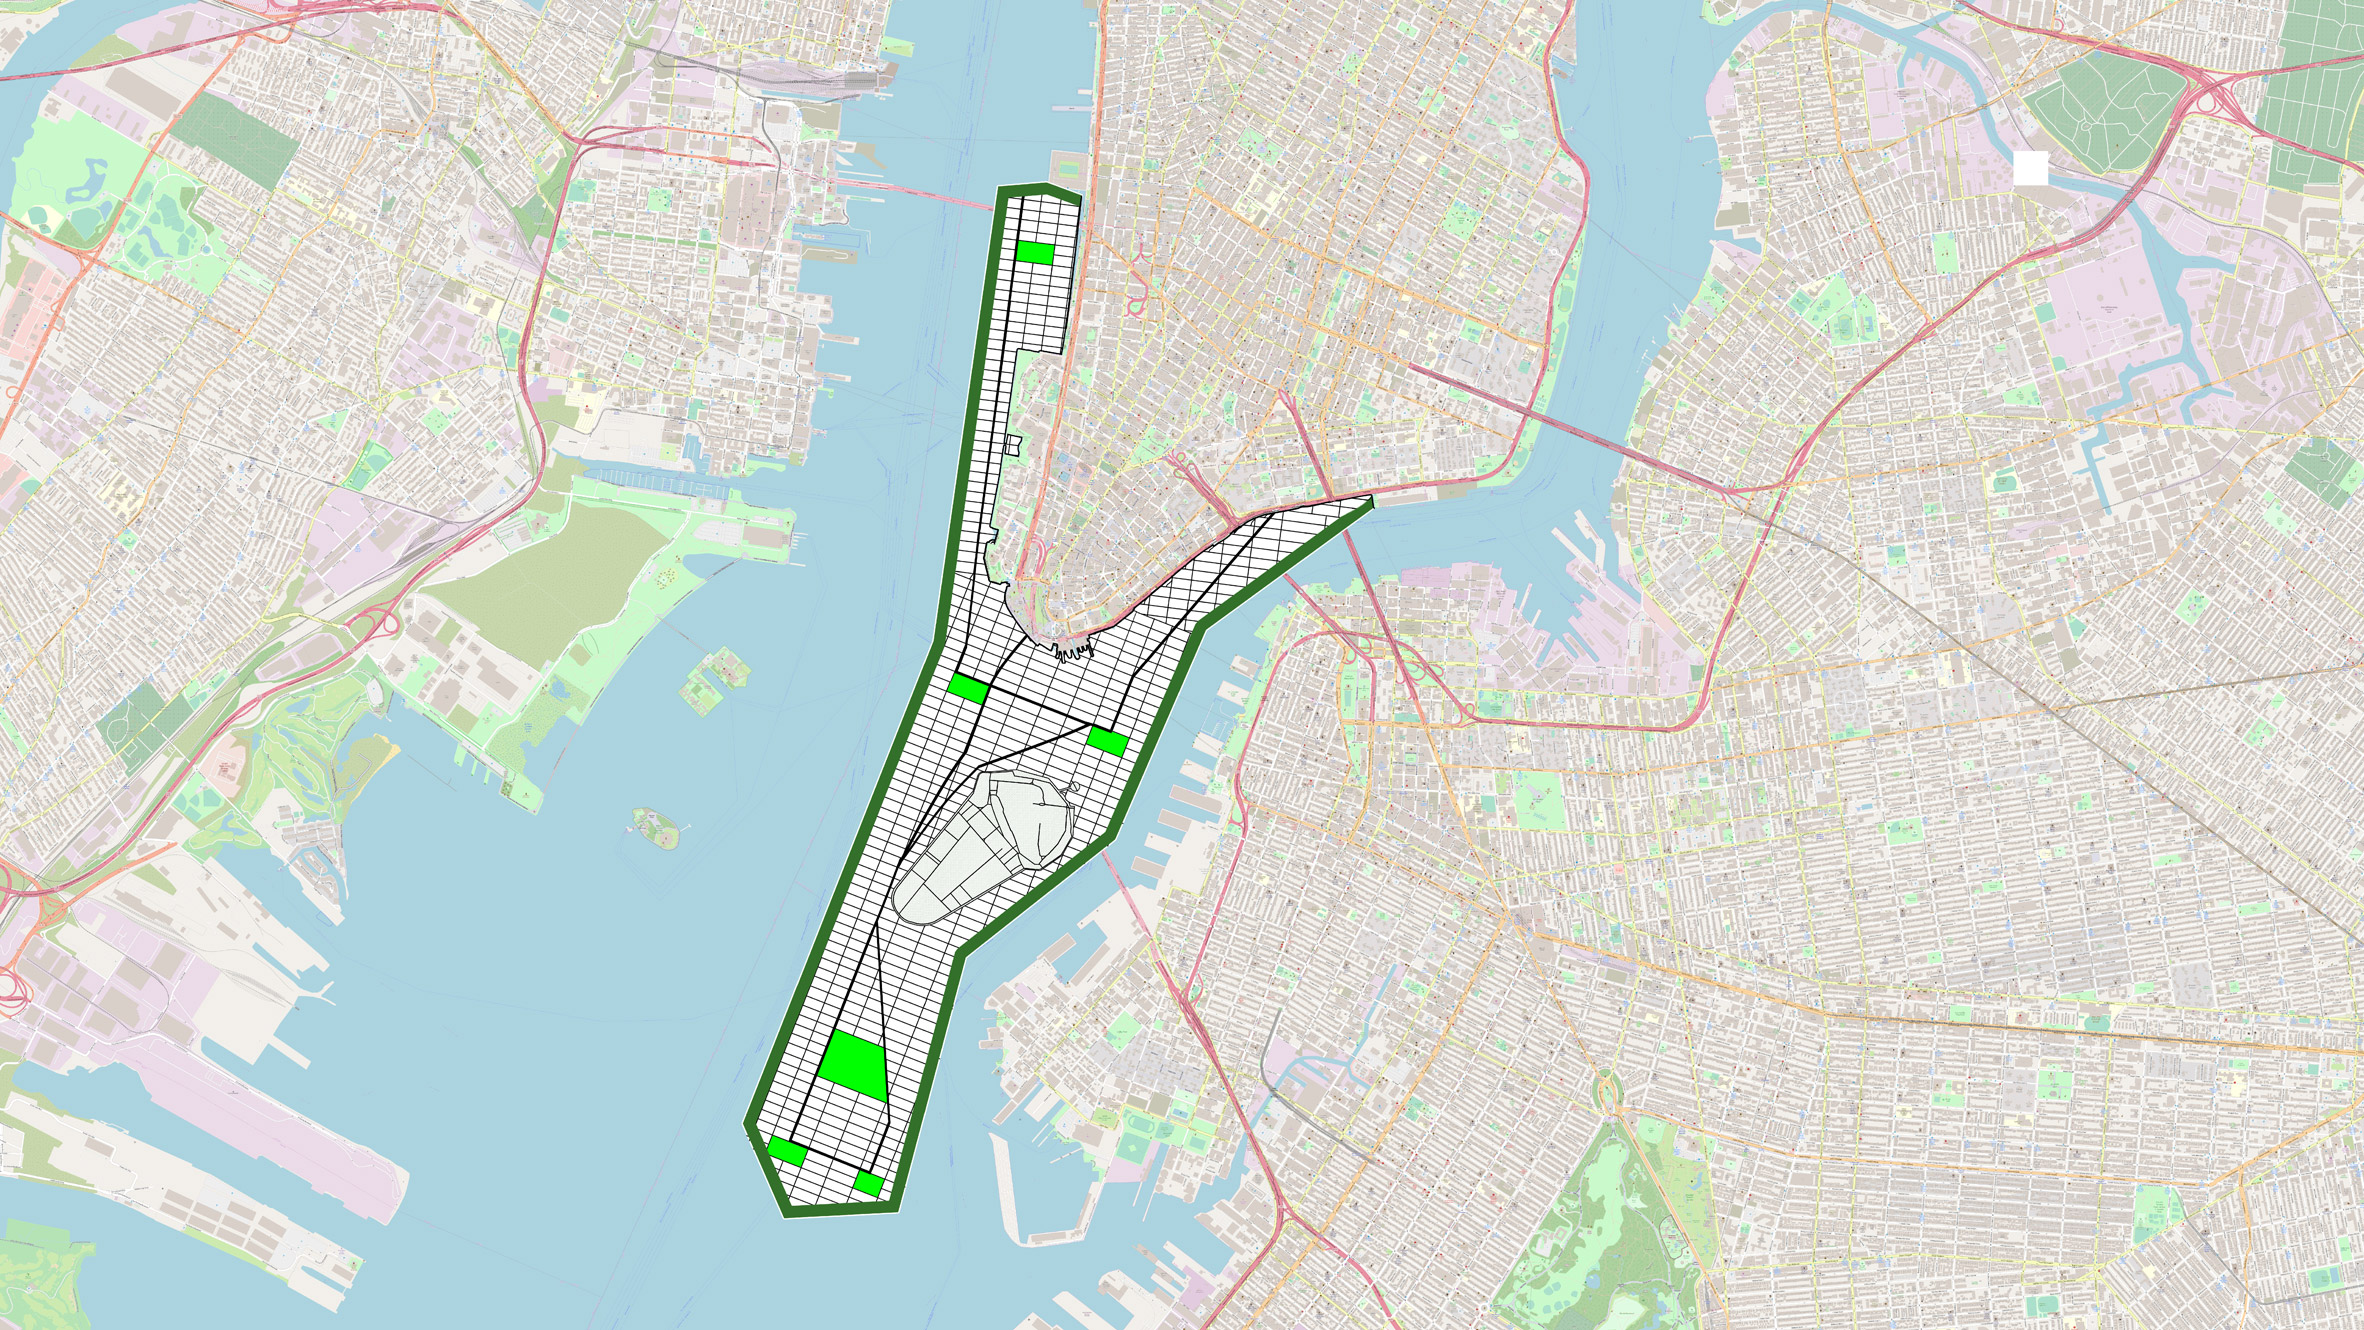 Manhattan Island expansion